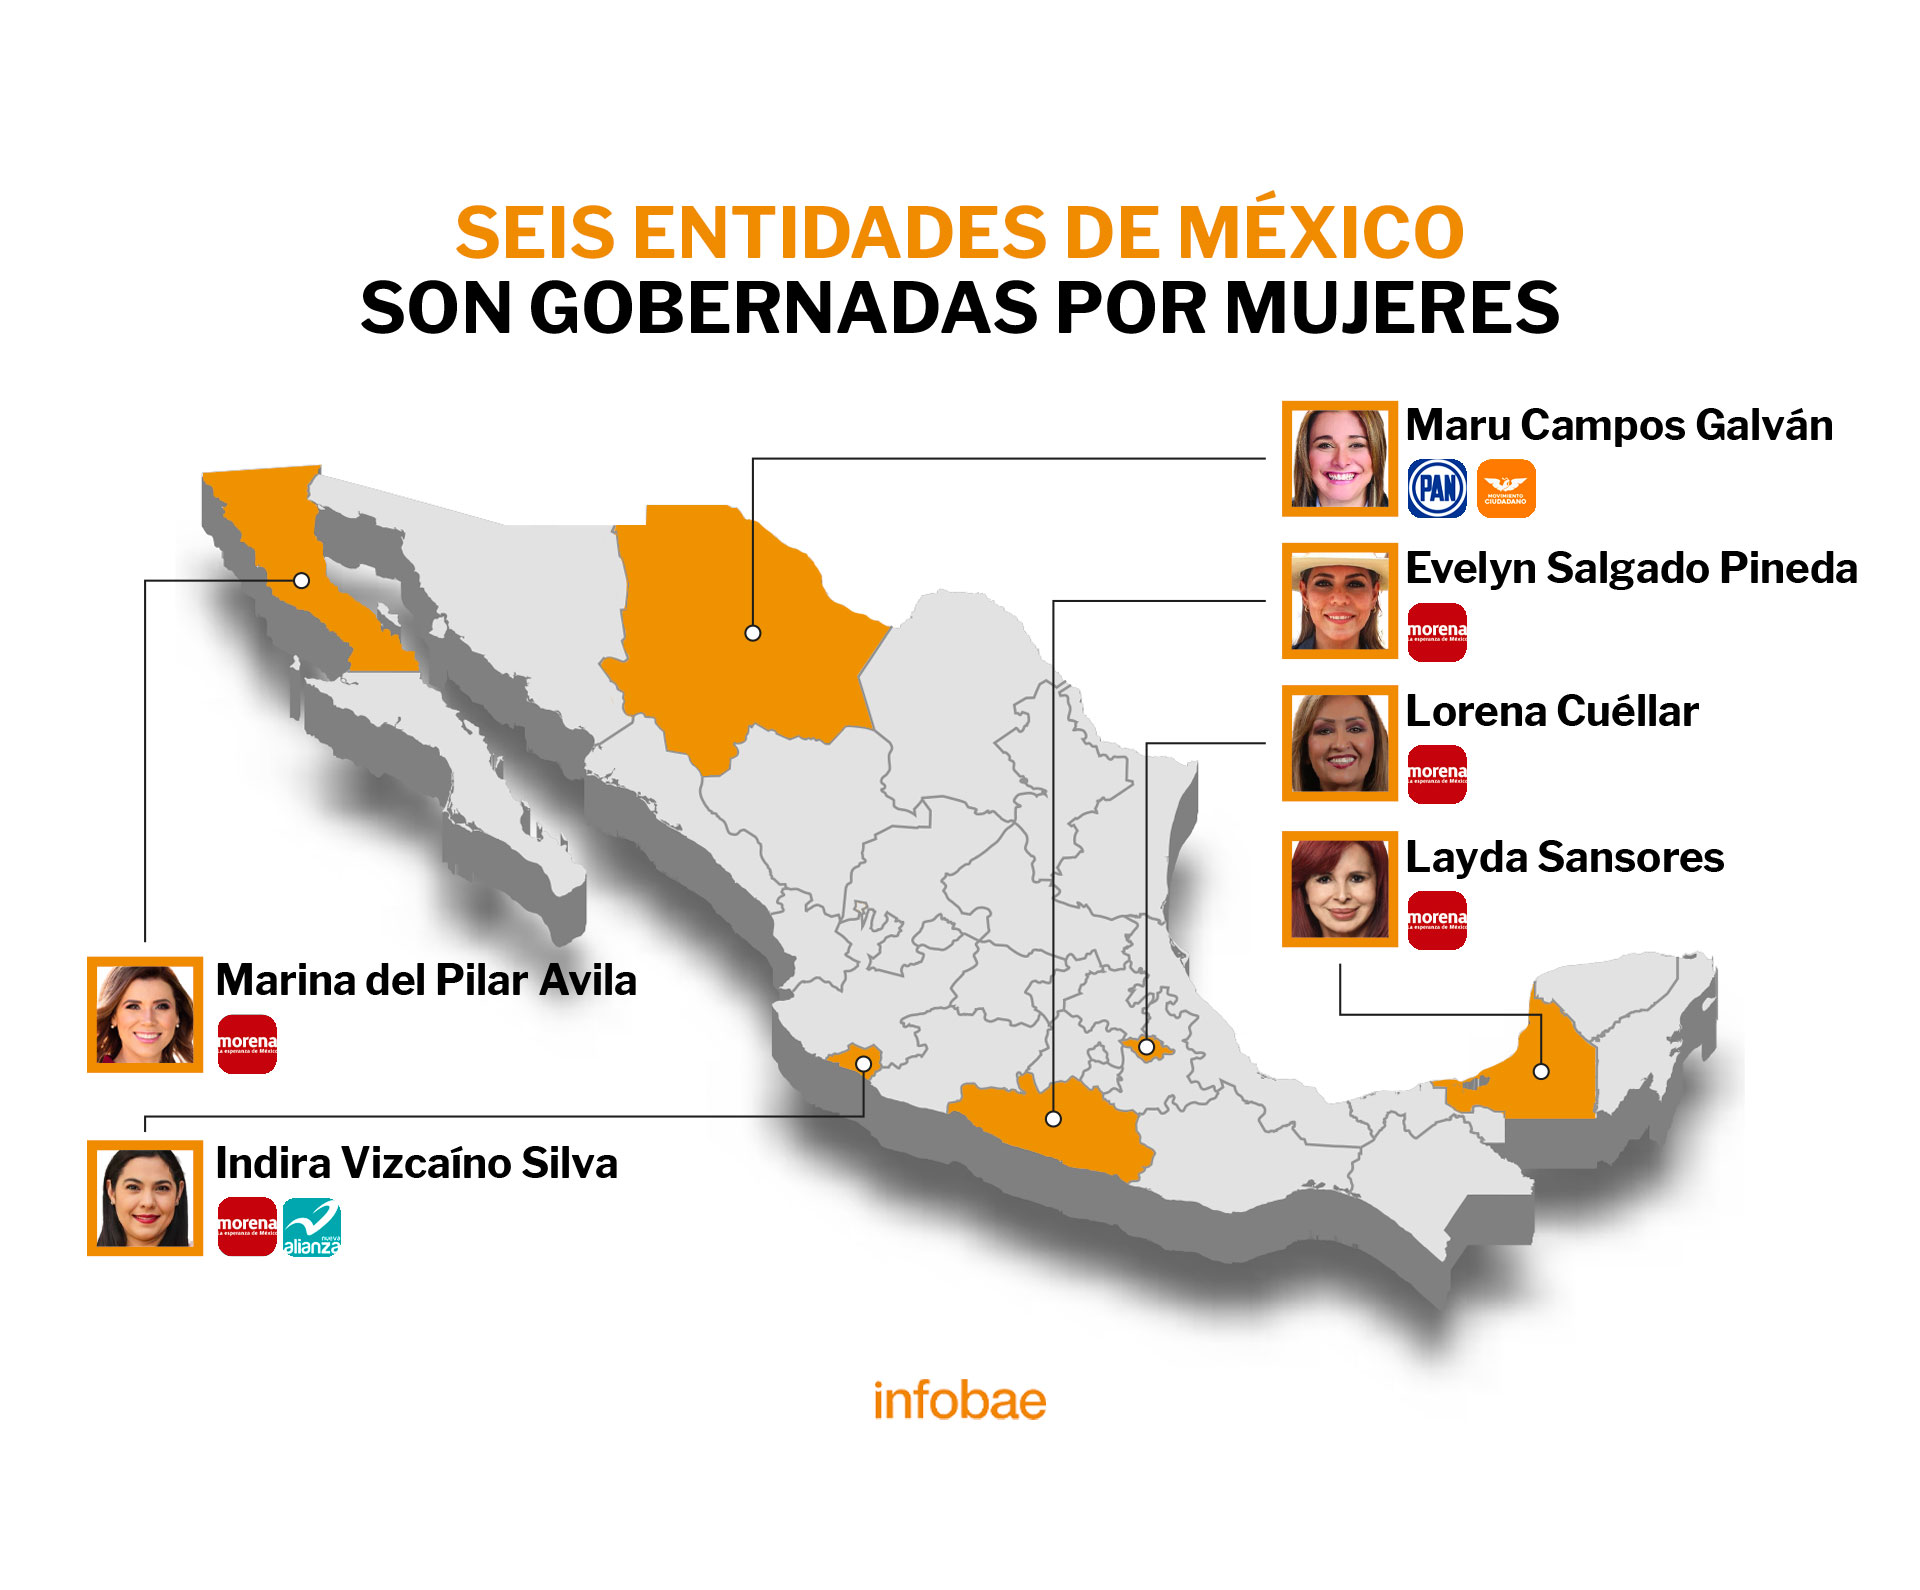 En la actualidad, seis entidades en México son gobernadas por mujeres (Foto: Infobae)